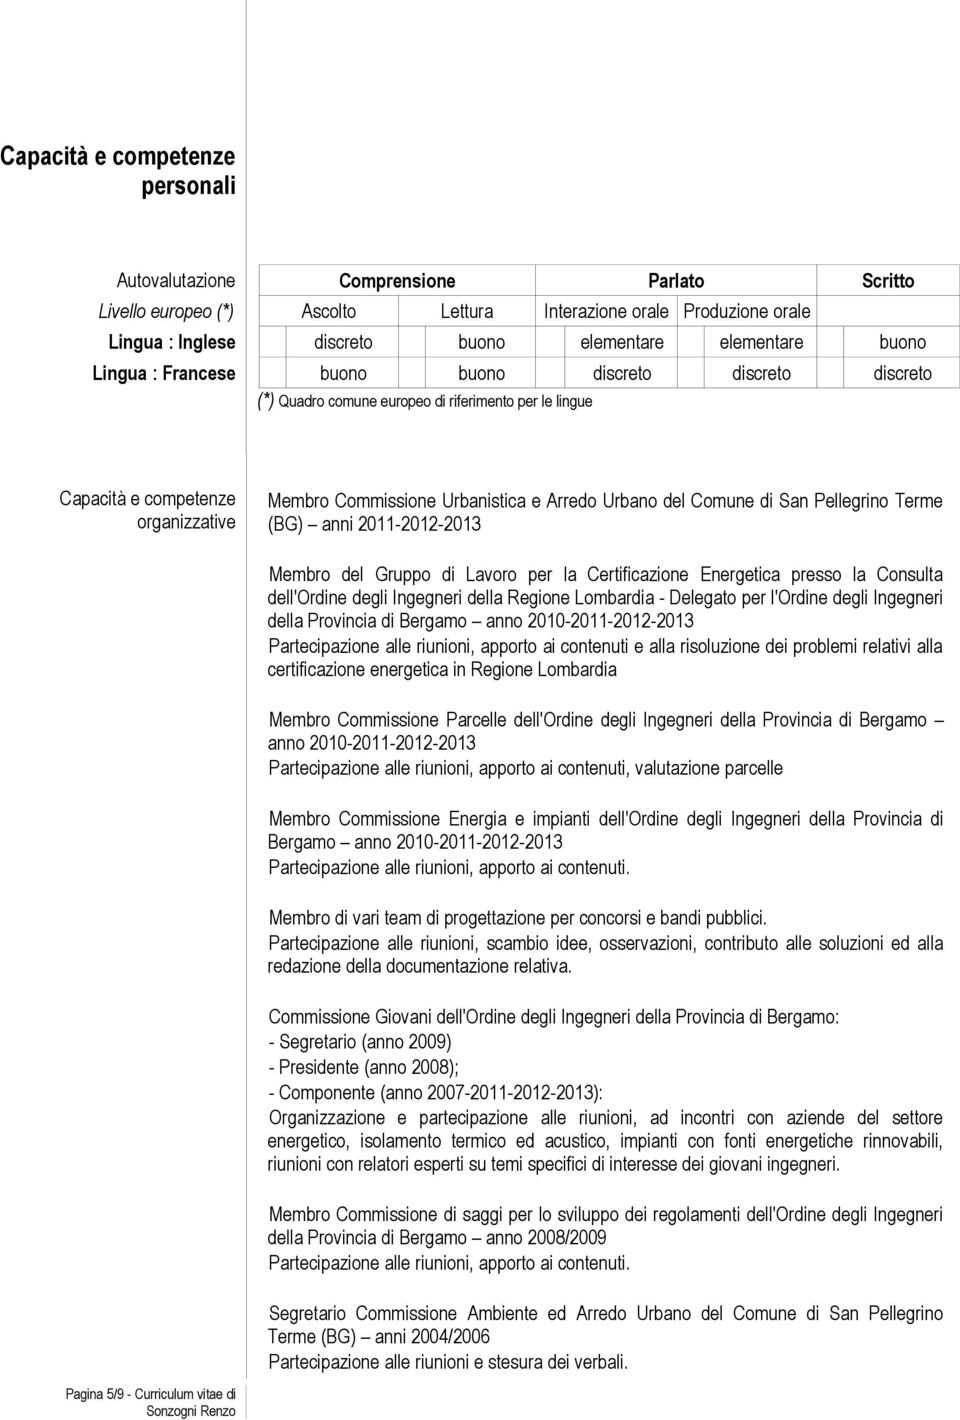 Arredo Urbano del Comune di San Pellegrino Terme (BG) anni 2011-2012-2013 Membro del Gruppo di Lavoro per la Certificazione Energetica presso la Consulta dell'ordine degli Ingegneri della Regione